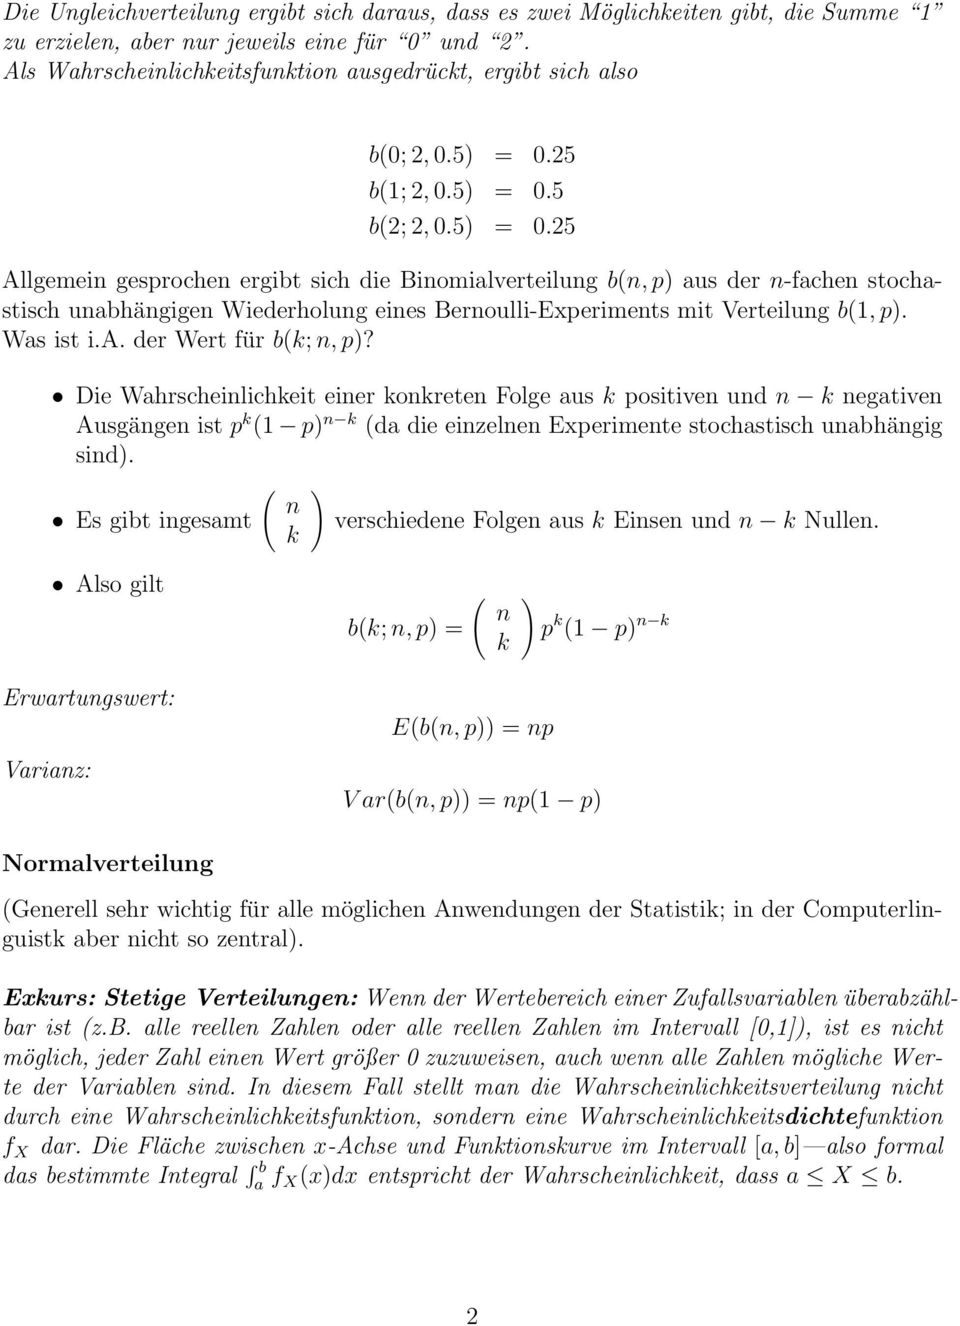 25 b(1; 2, 0.5) = 0.5 b(2; 2, 0.5) = 0.25 Allgemein gesprochen ergibt sich die Binomialverteilung b(n, p) aus der n-fachen stochastisch unabhängigen Wiederholung eines Bernoulli-Experiments mit Verteilung b(1, p).